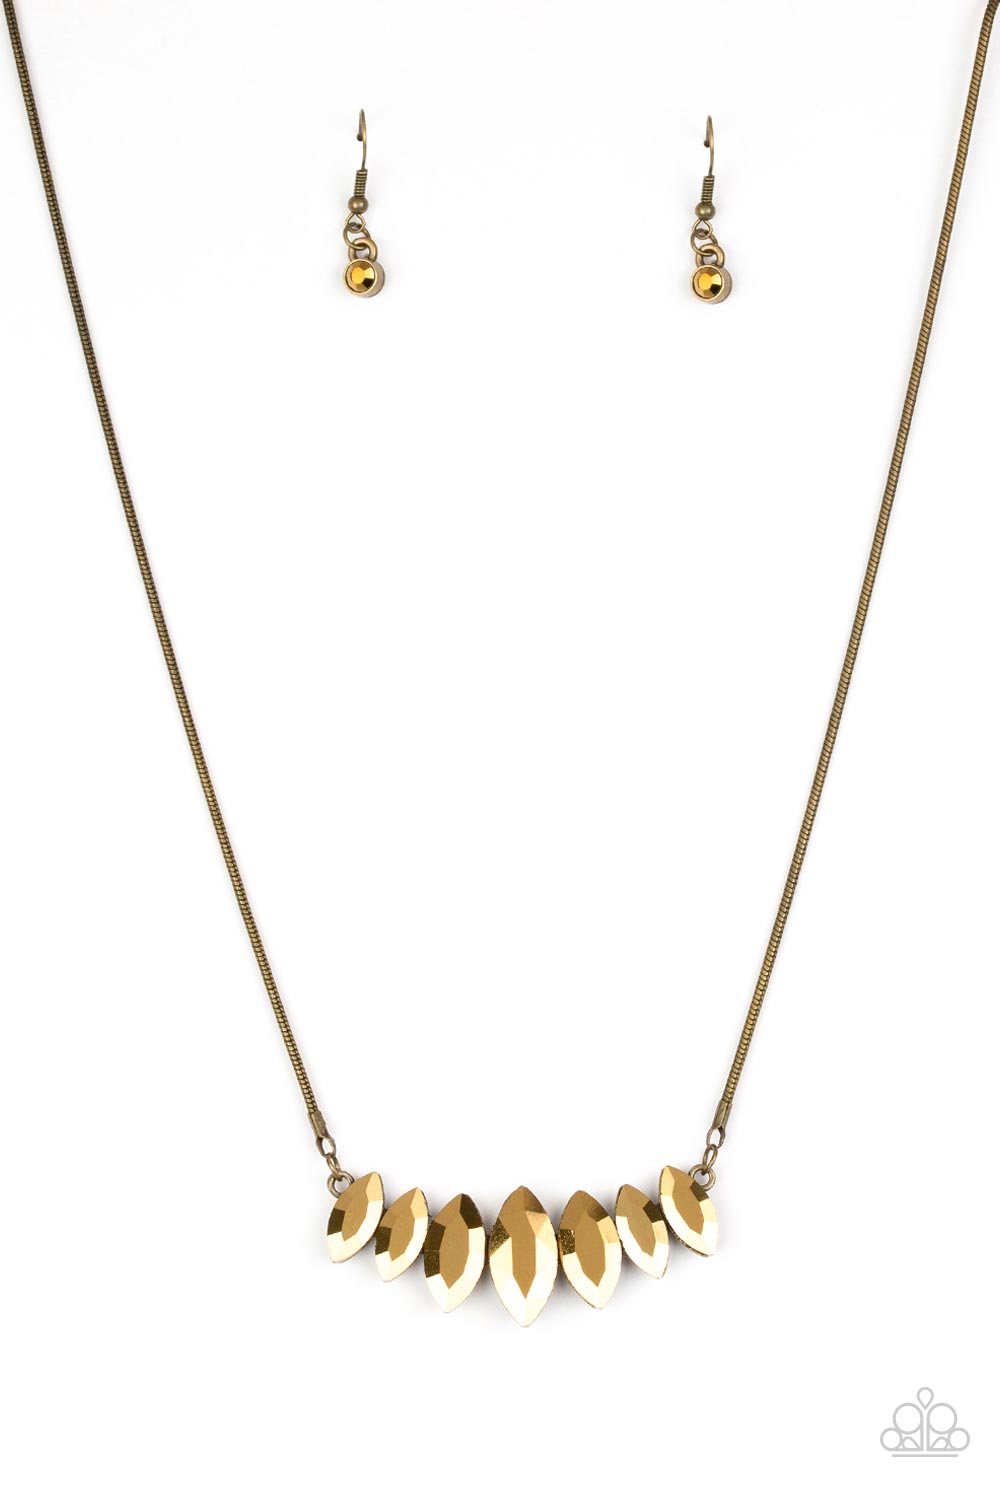 Leading Lady - Brass Necklace freeshipping - JewLz4u Gemstone Gallery